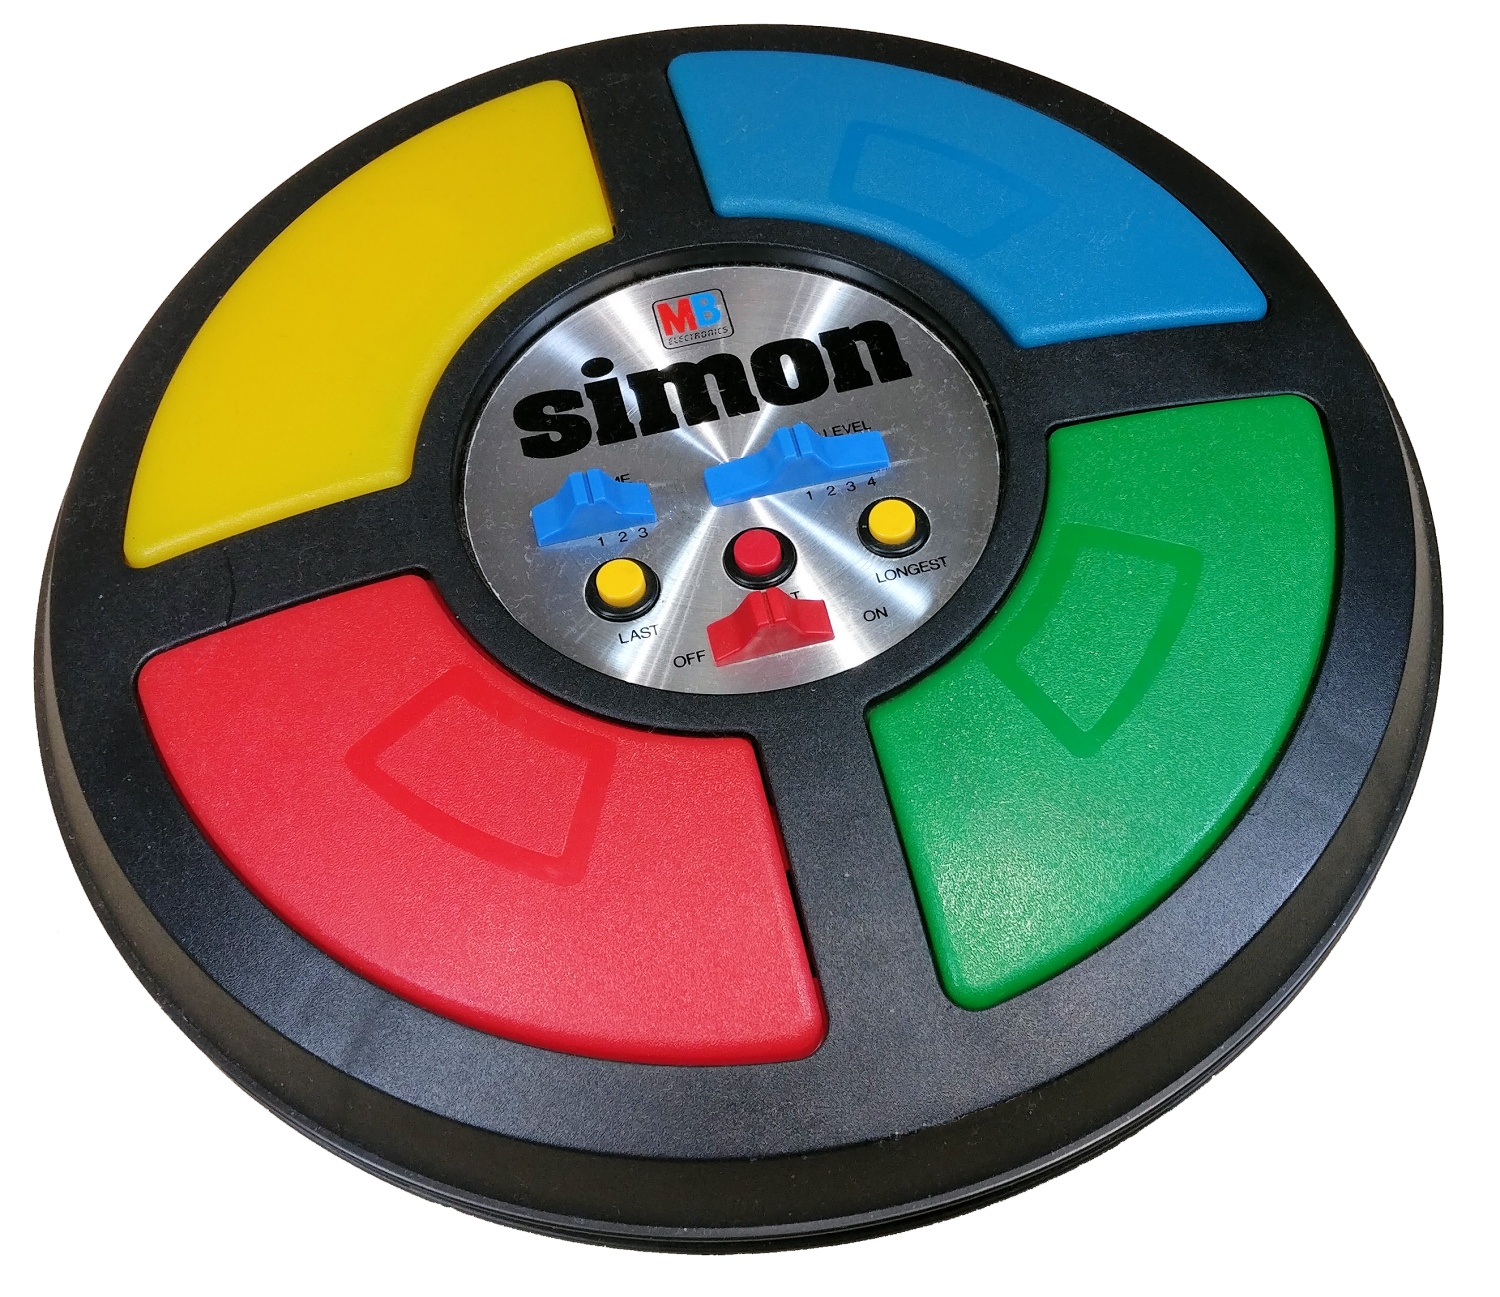 Simon (game) - Wikipedia